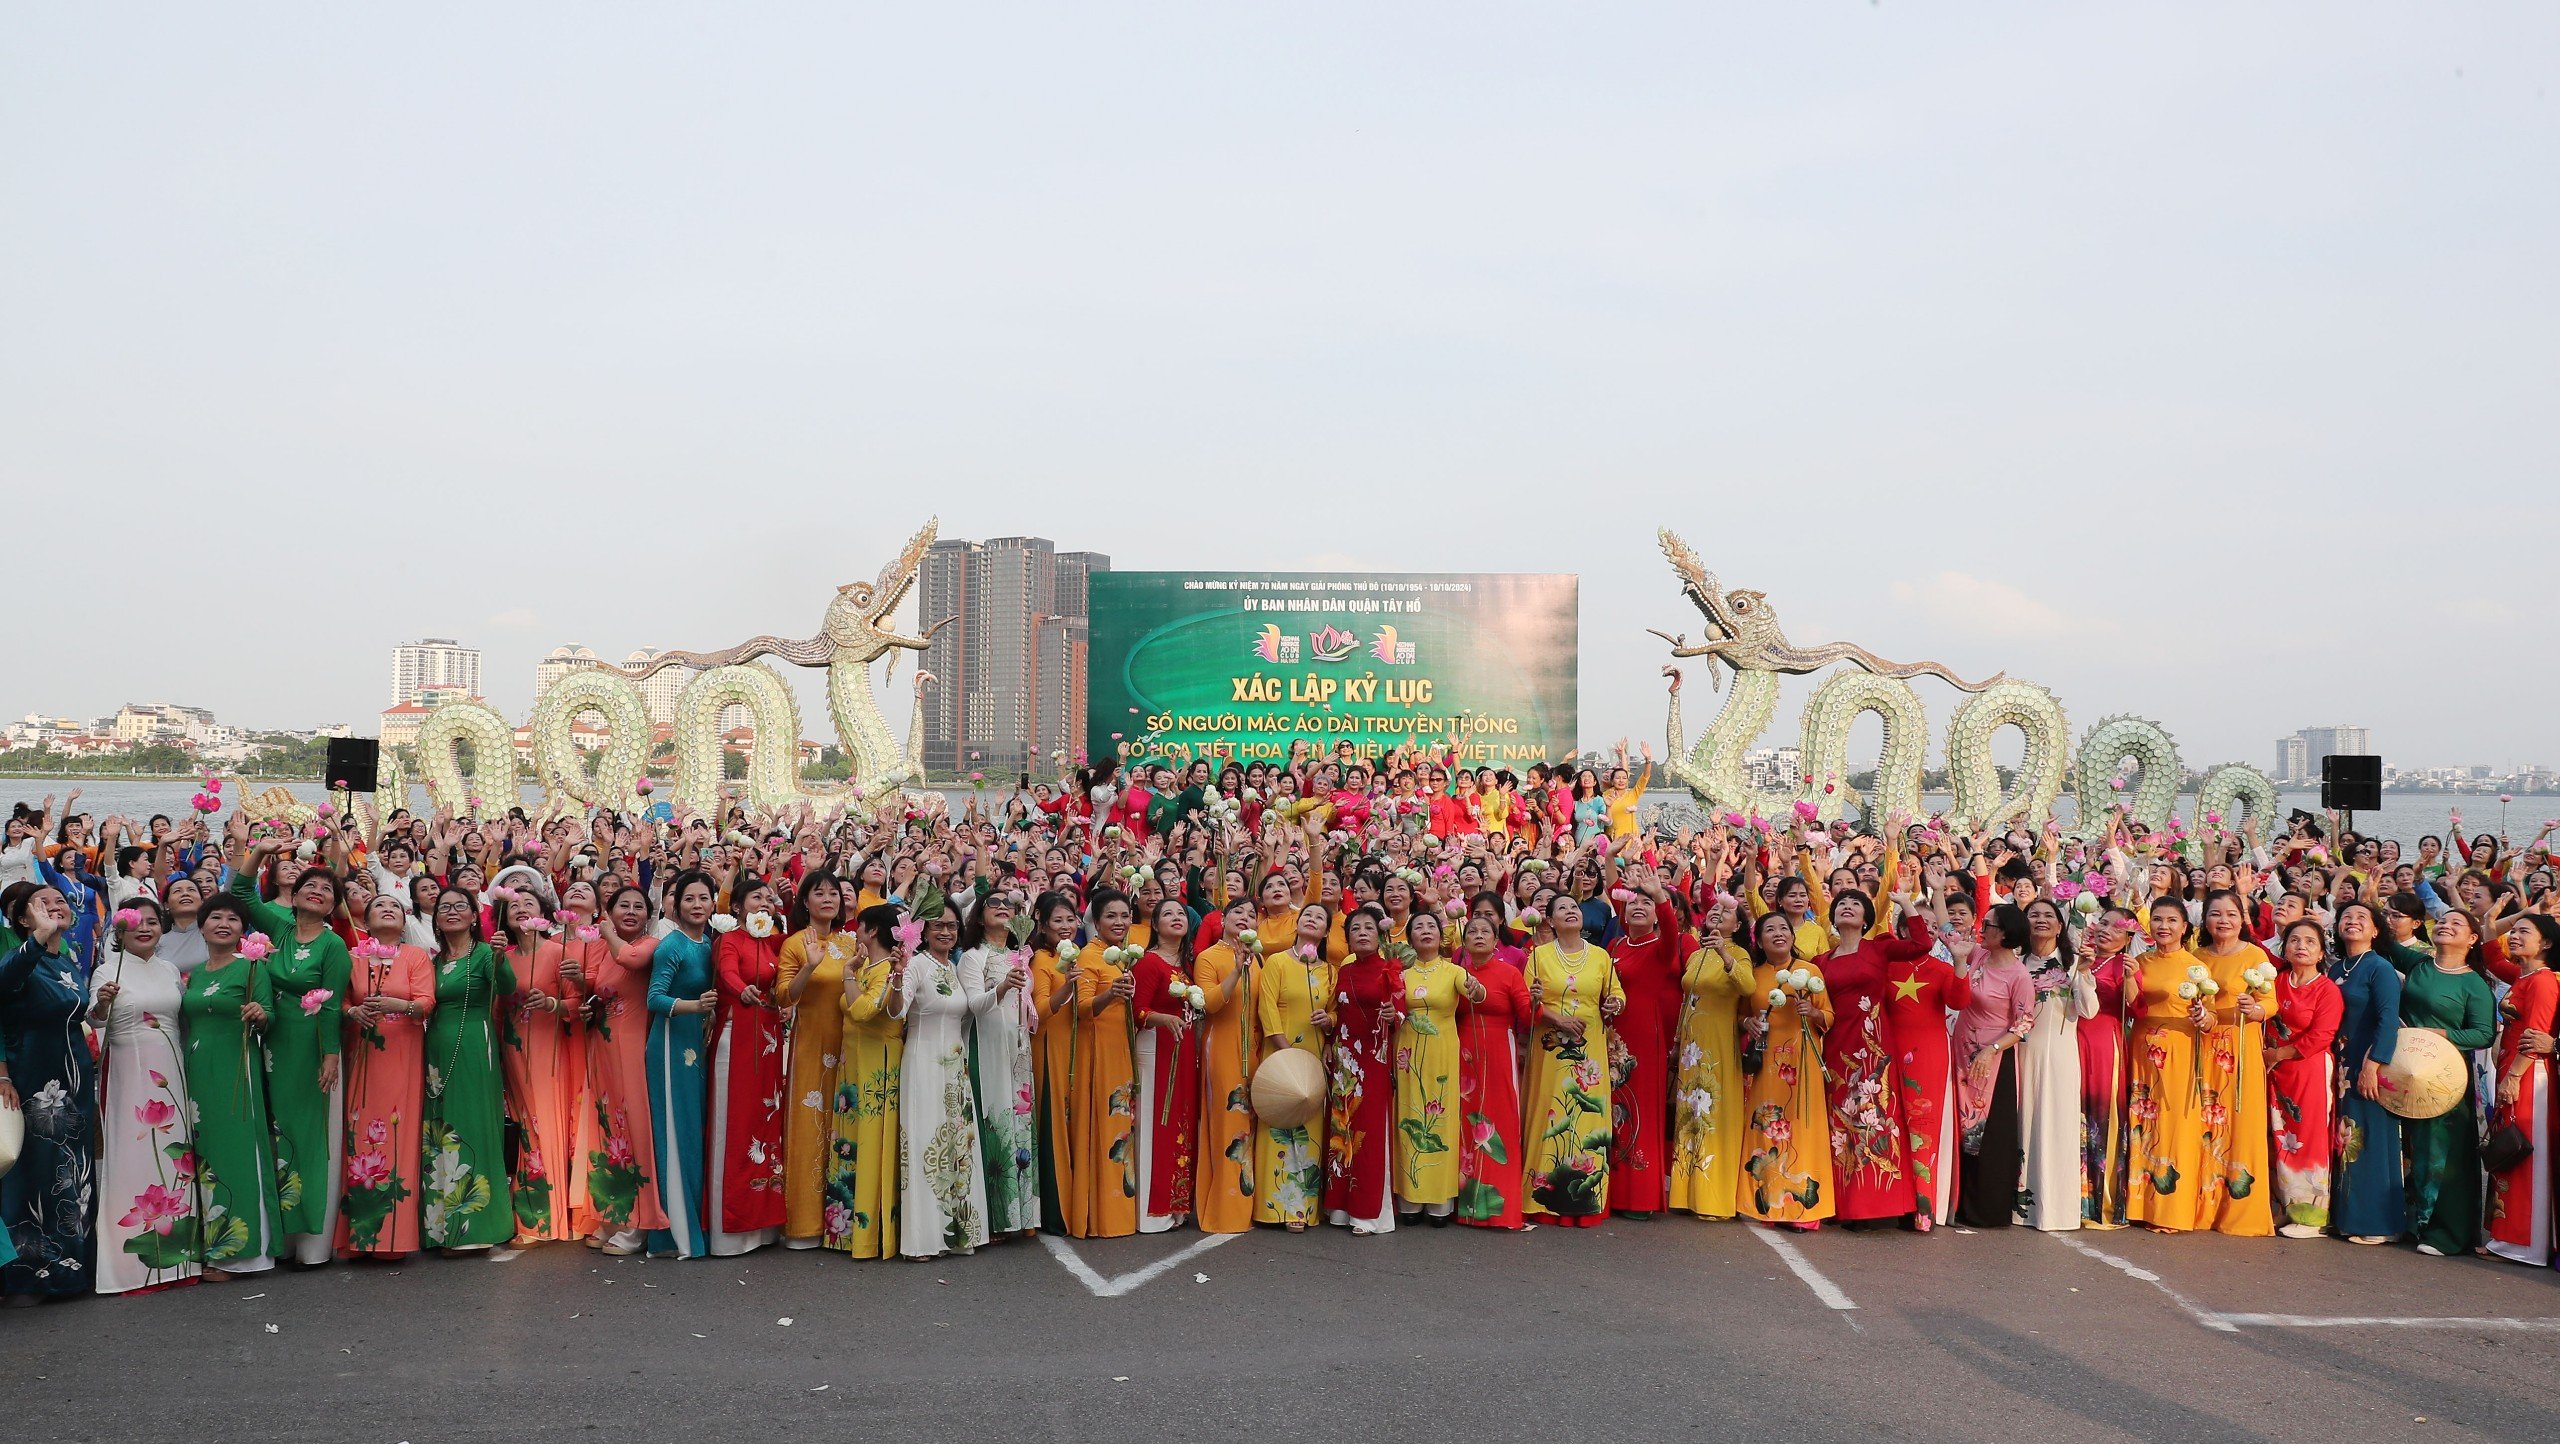 Xác lập kỷ lục “Số người mặc áo dài có họa tiết hoa sen nhiều nhất Việt Nam”